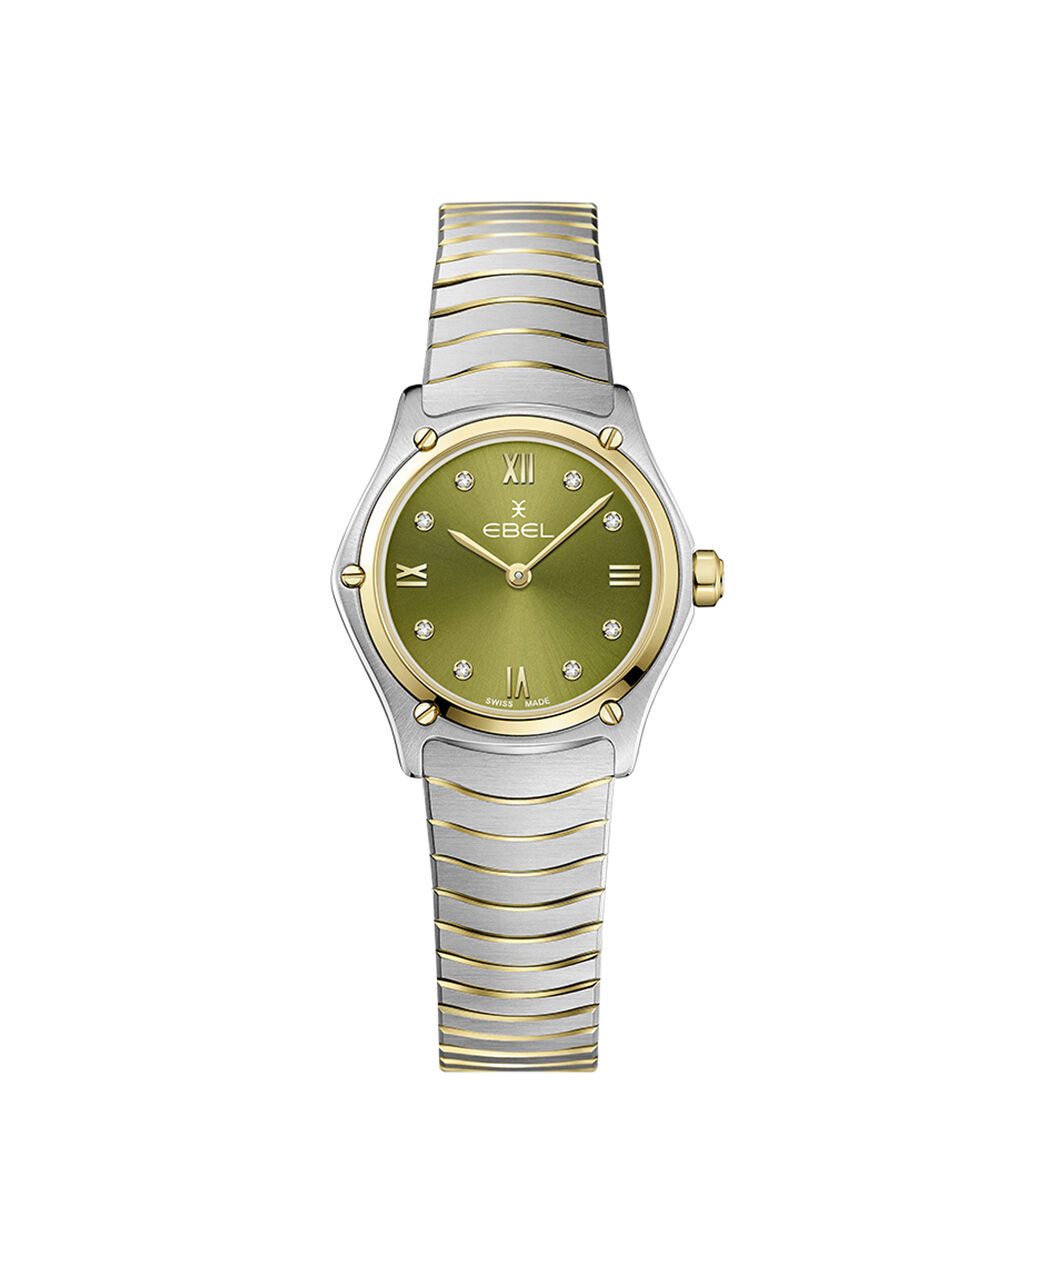 Fake Piaget Gold Watches